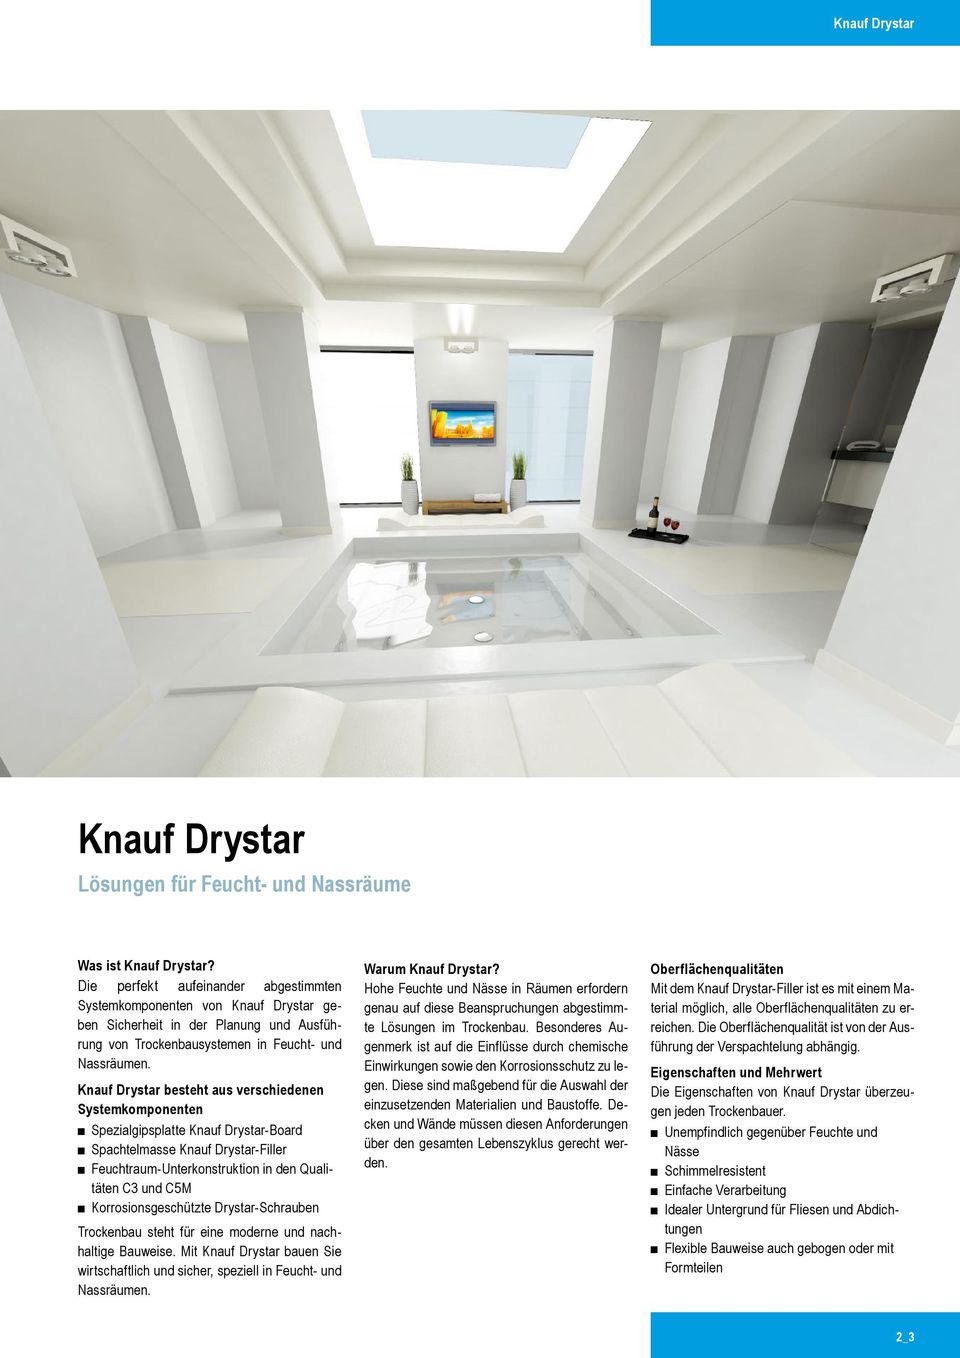 Knauf Drystar besteht aus verschiedenen Systemkomponenten Spezialgipsplatte Knauf Drystar-Board Spachtelmasse Knauf Drystar-Filler Feuchtraum Unterkonstruktion in den Qualitäten C3 und C5M